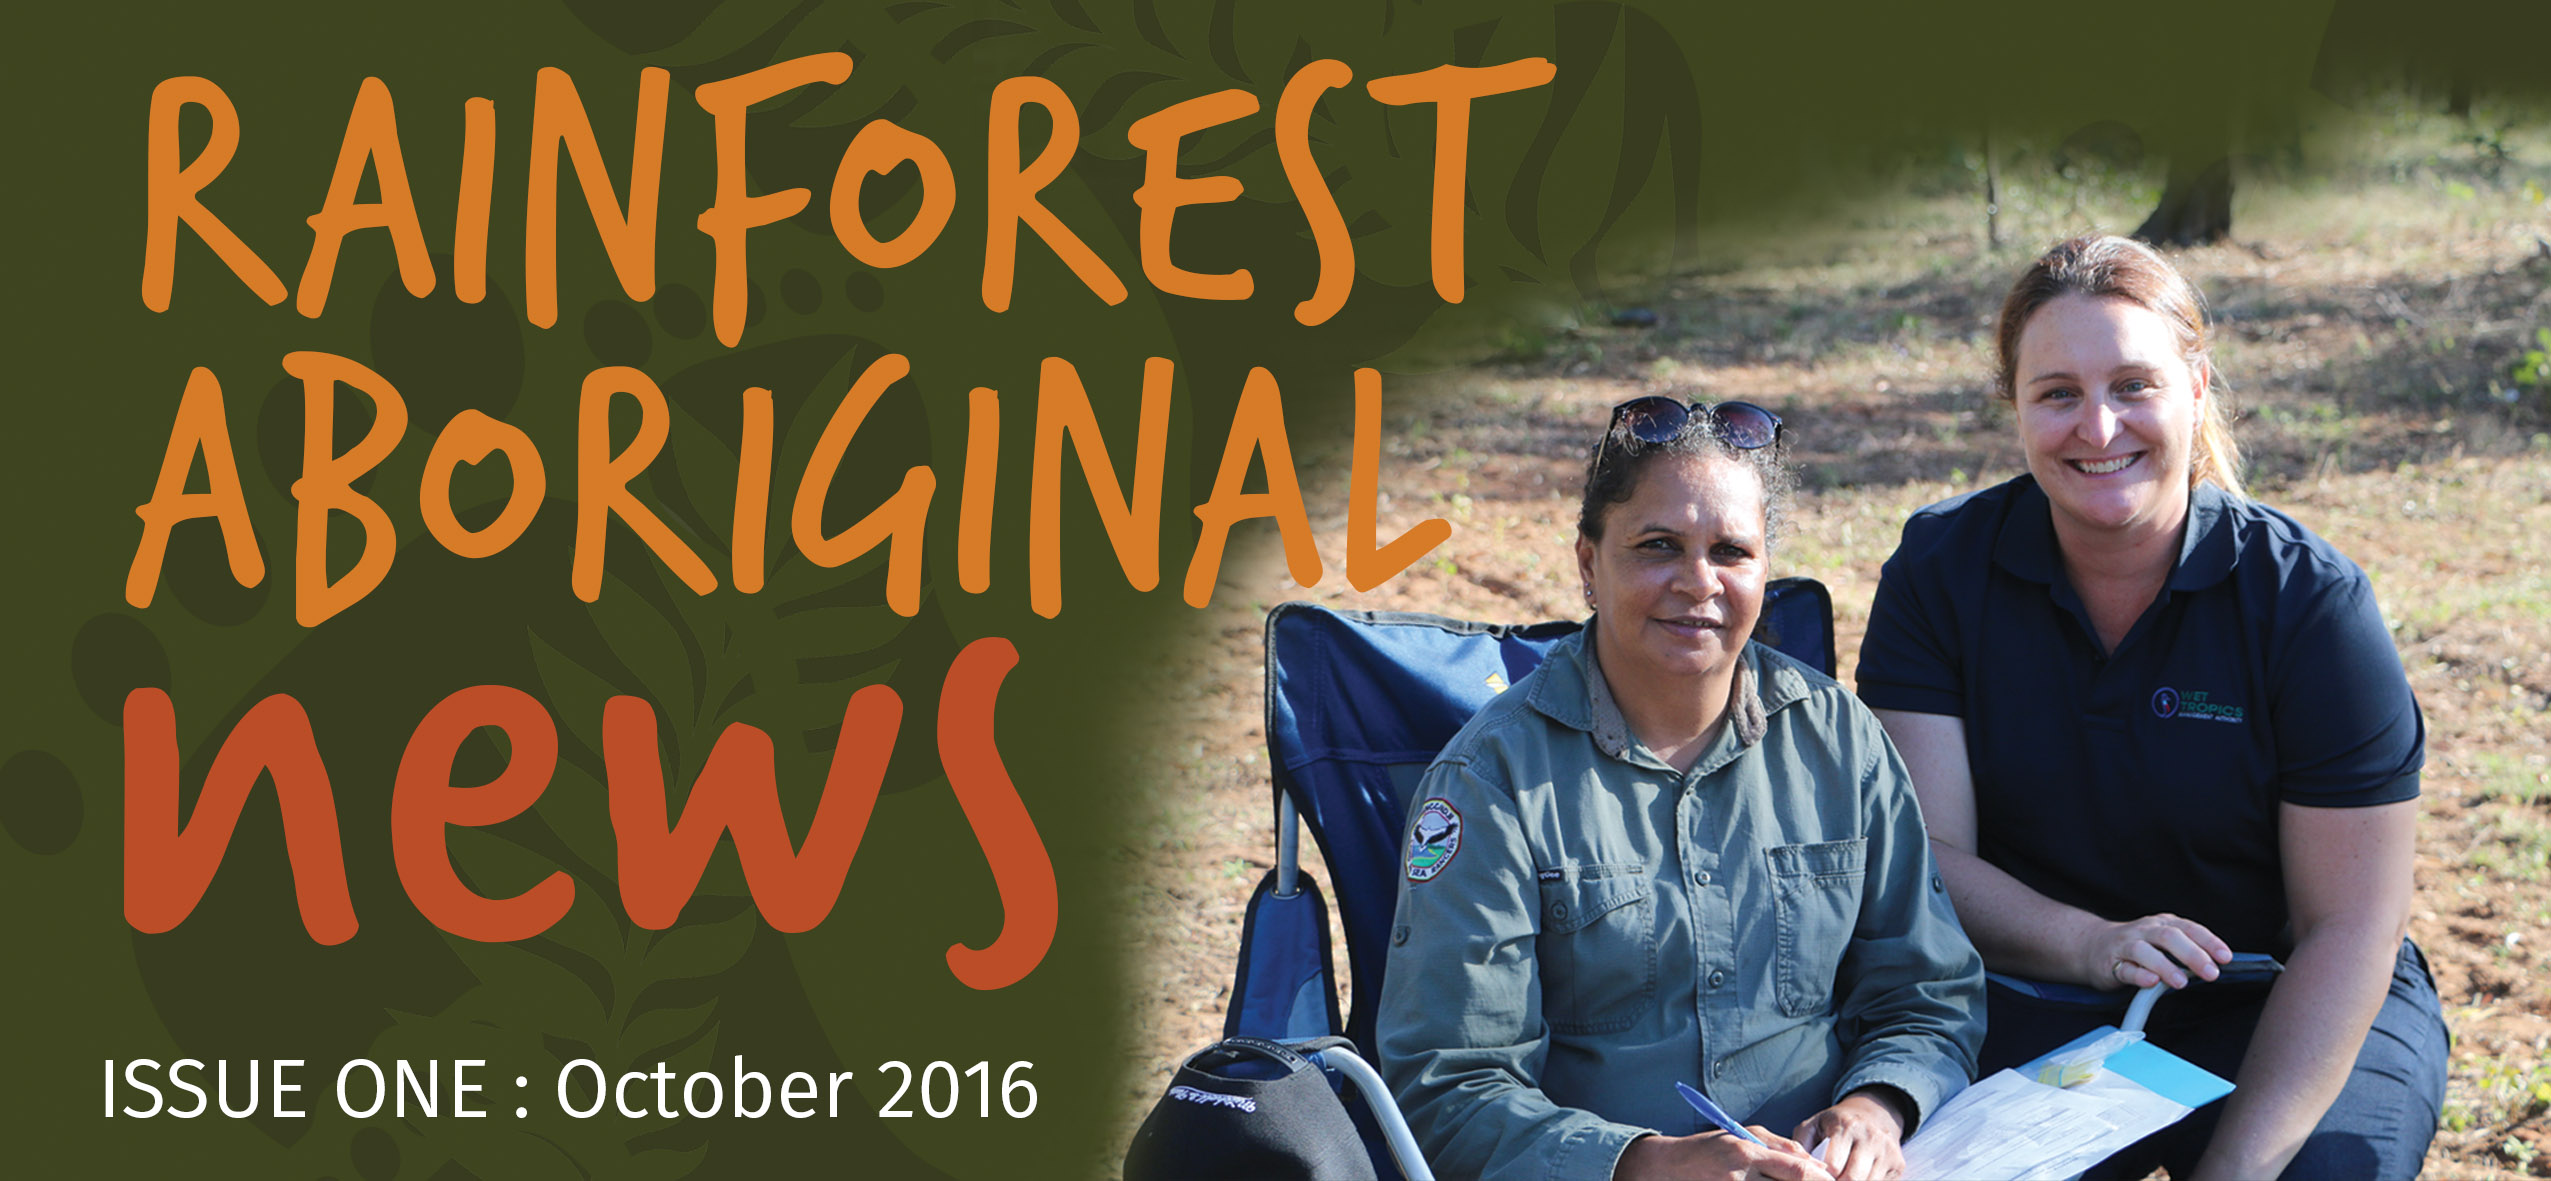 Revival of Rainforest Aboriginal News